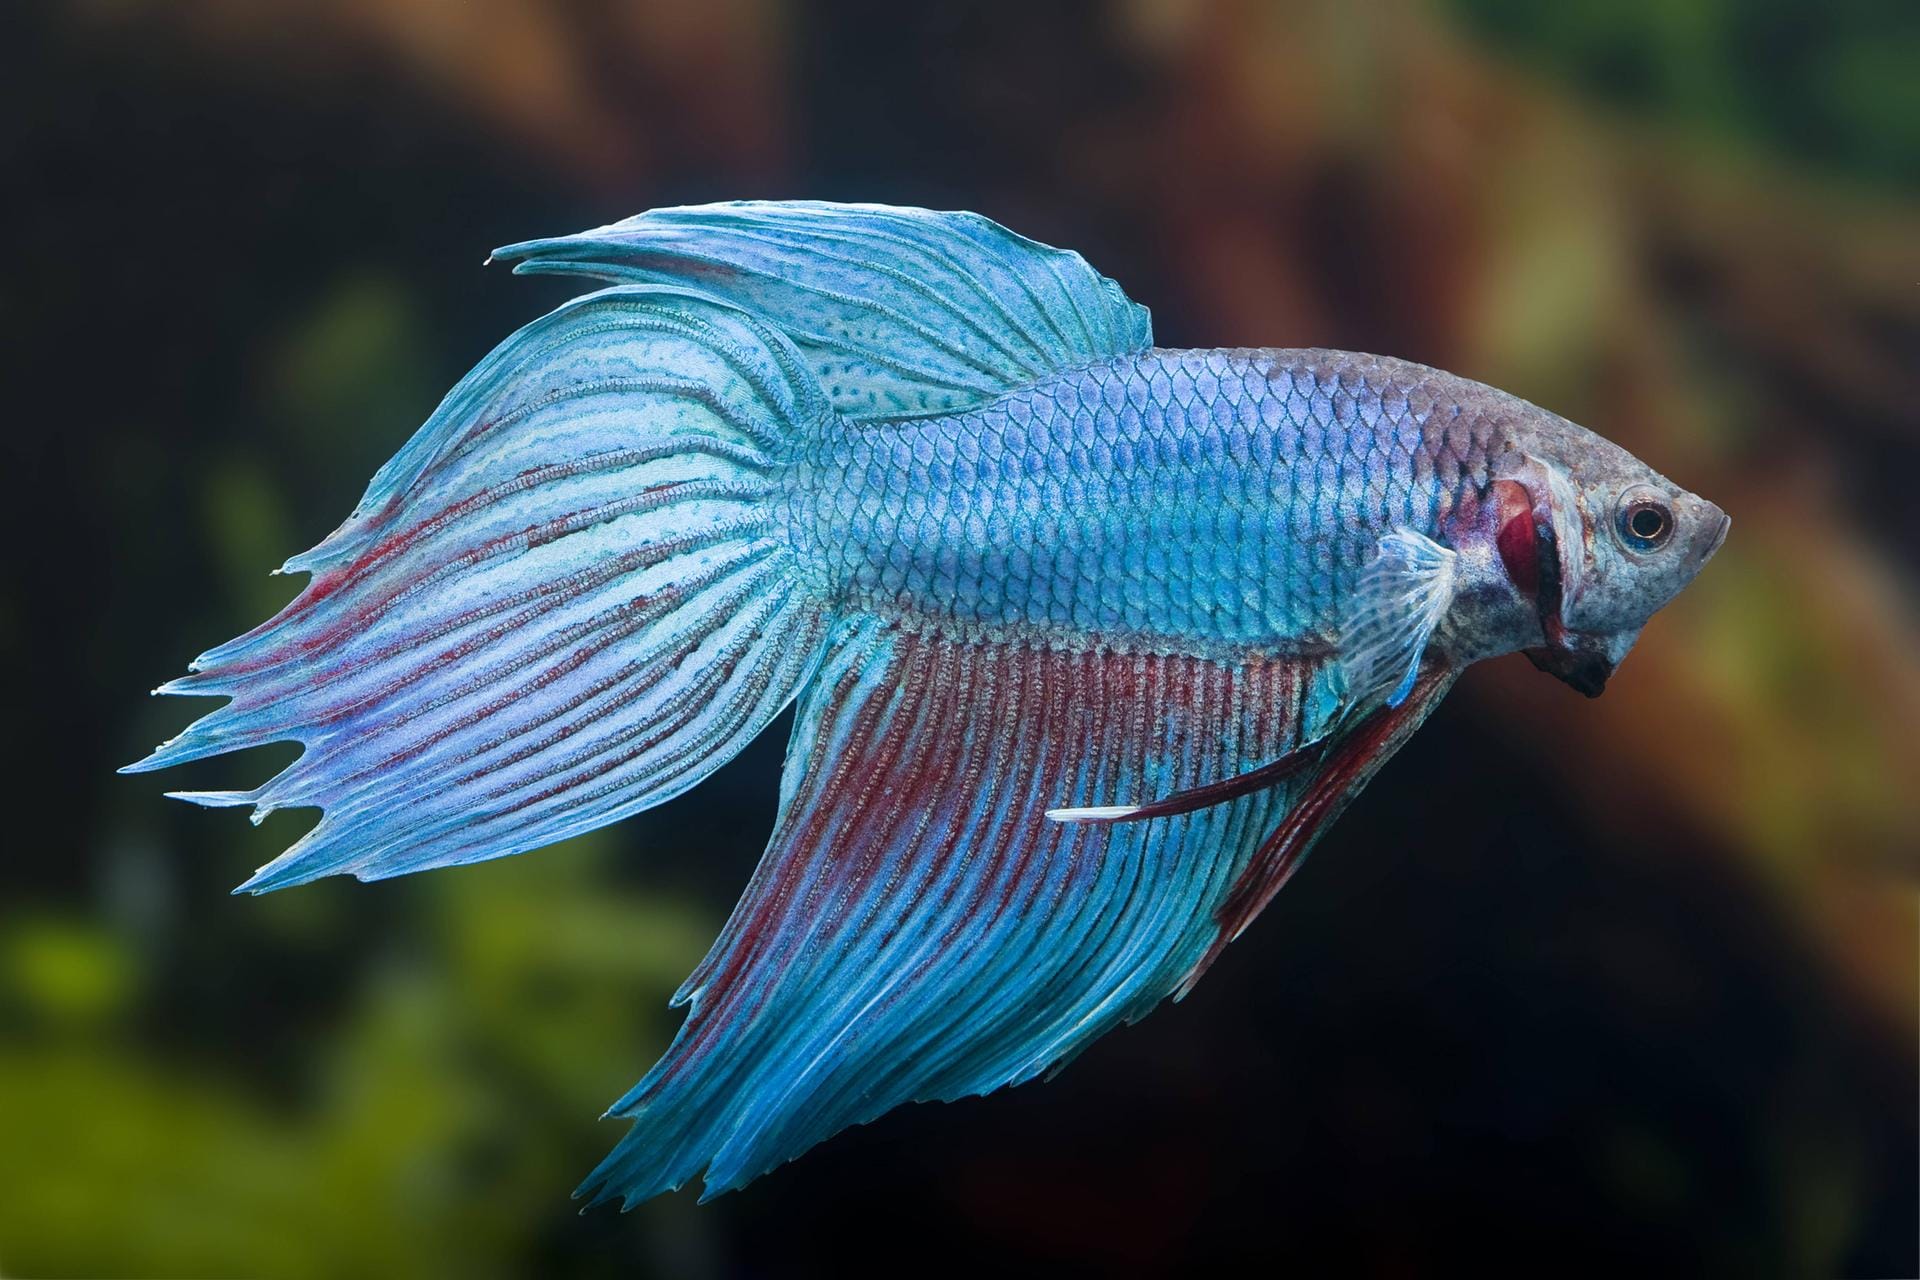 Der Kampffisch bringt Farbe ins heimische Aquarium – allerdings sollte es groß genug sein.